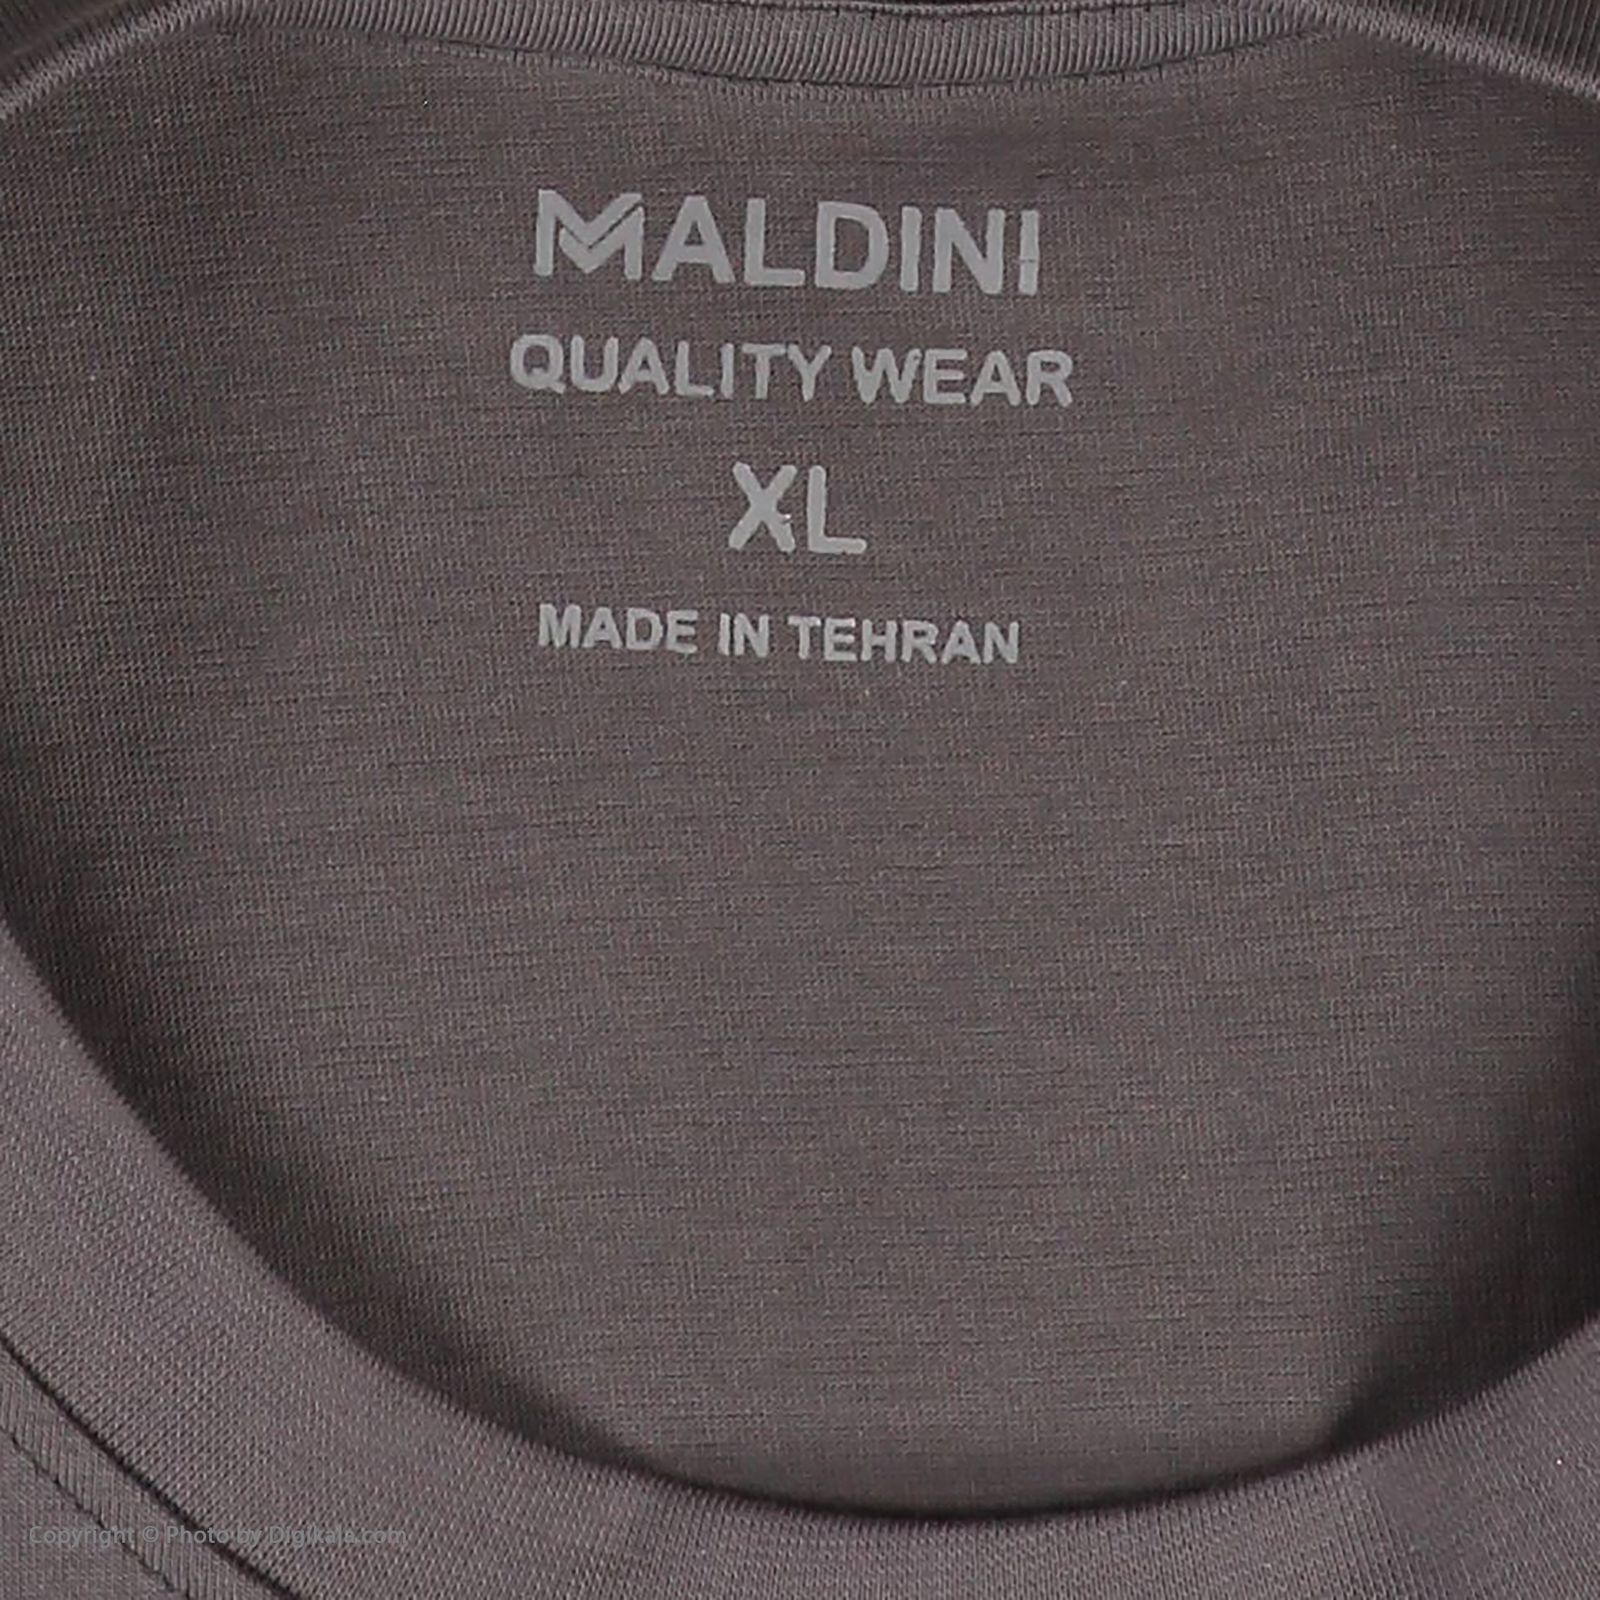 تی شرت آستین کوتاه مردانه مالدینی مدل T-167 -  - 4